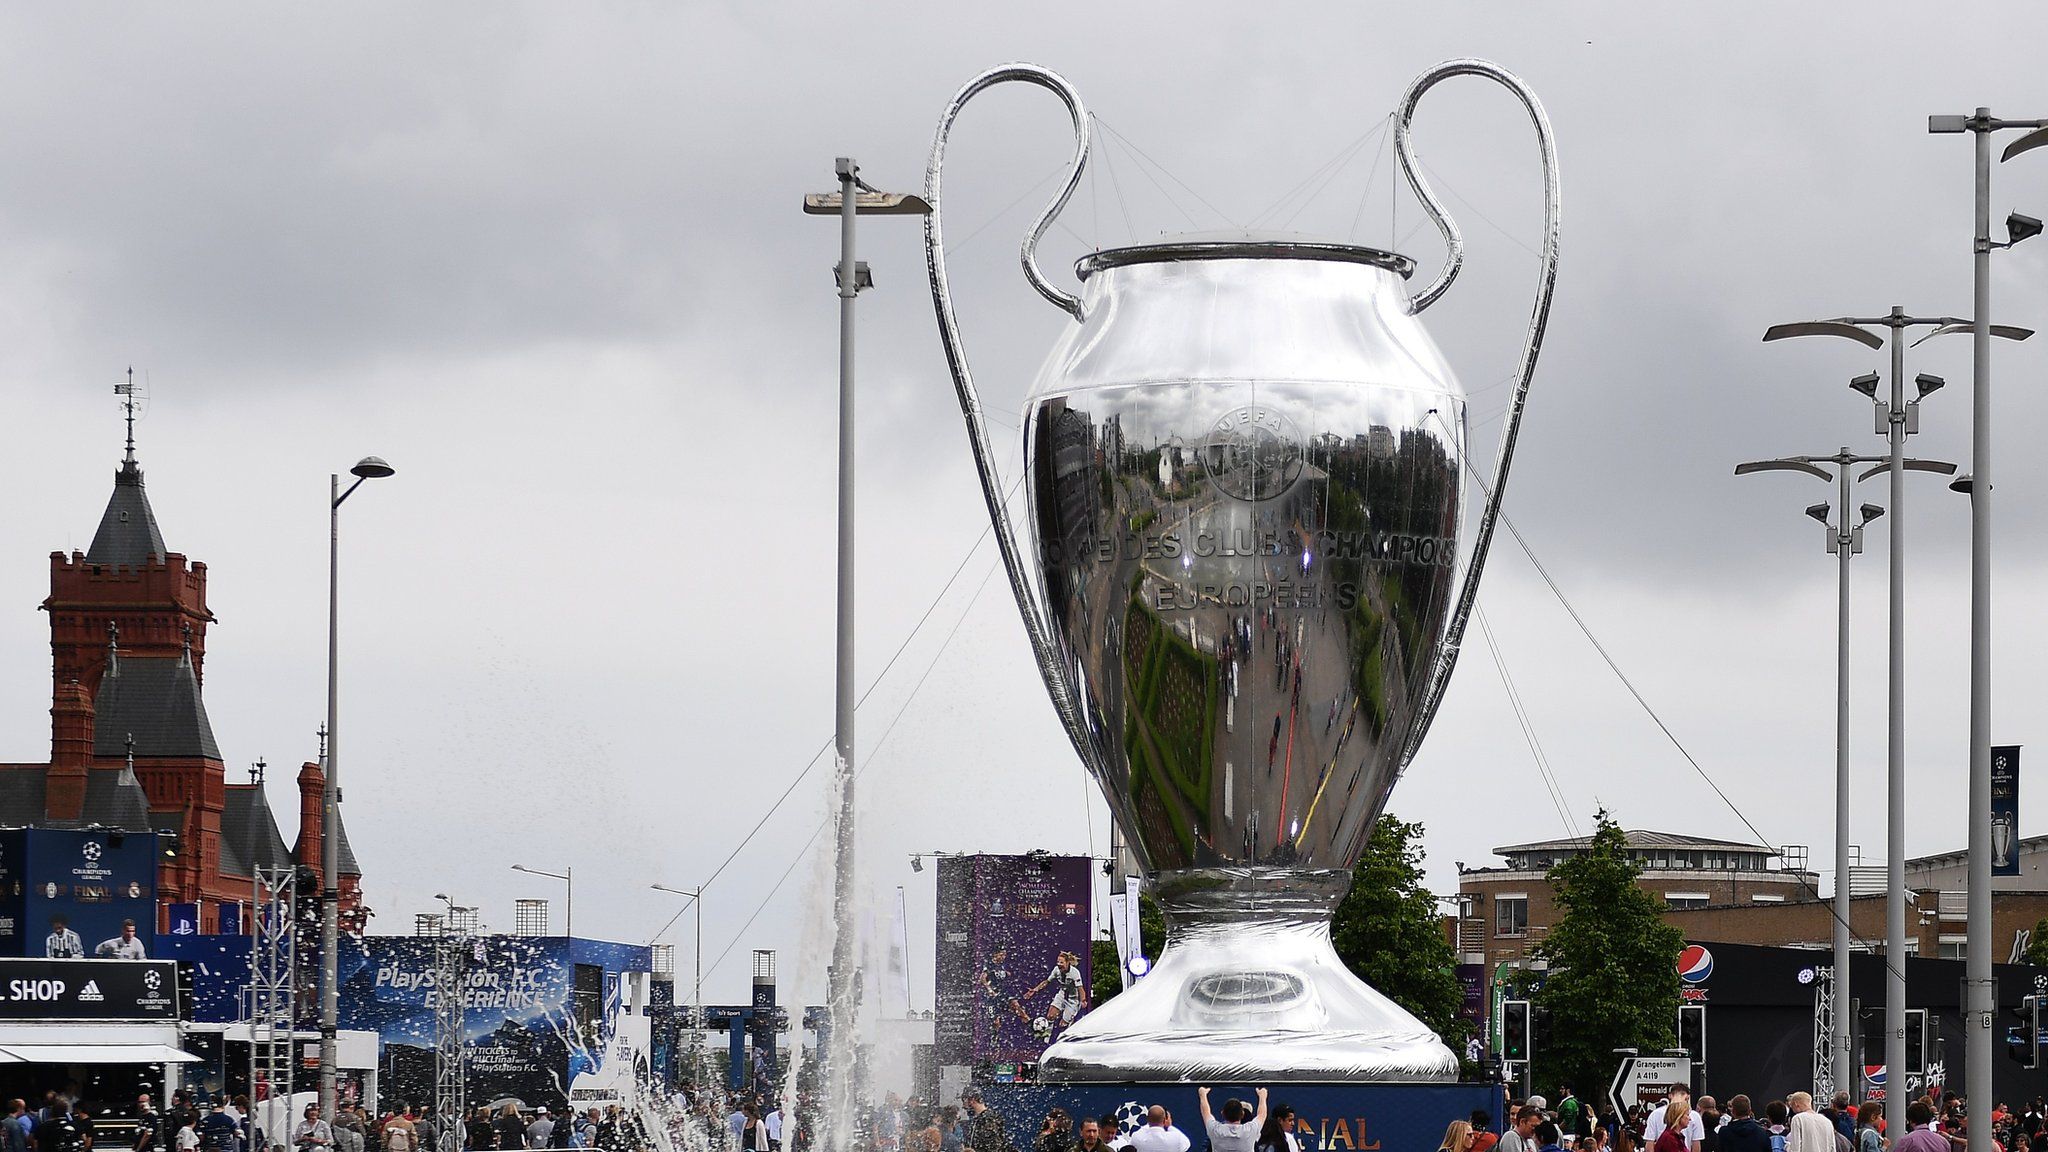 Giant Champions League trophy